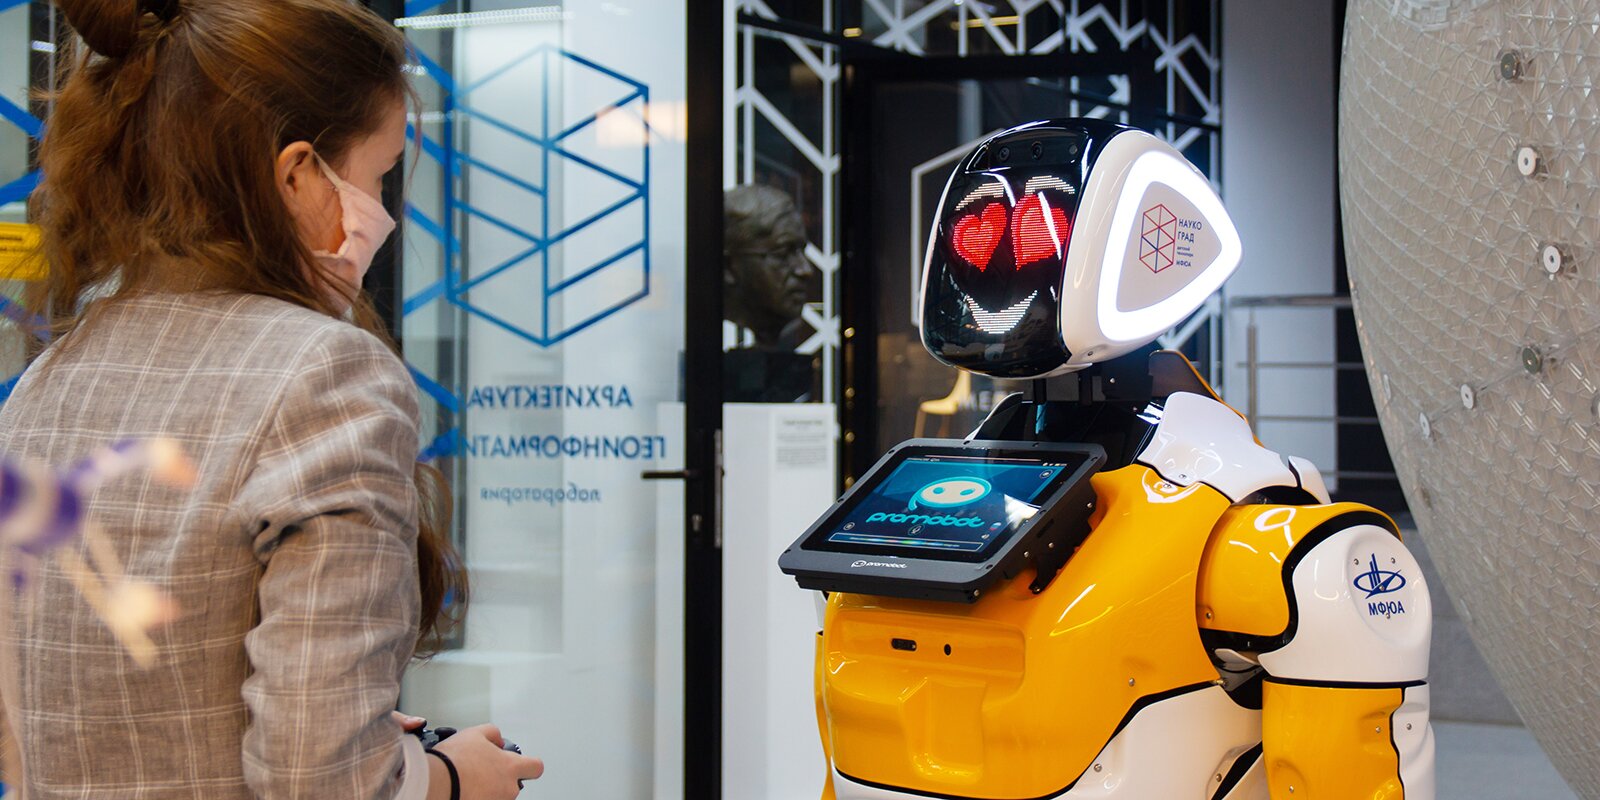 В детском технопарке «Наукоград» будет преподавать робот